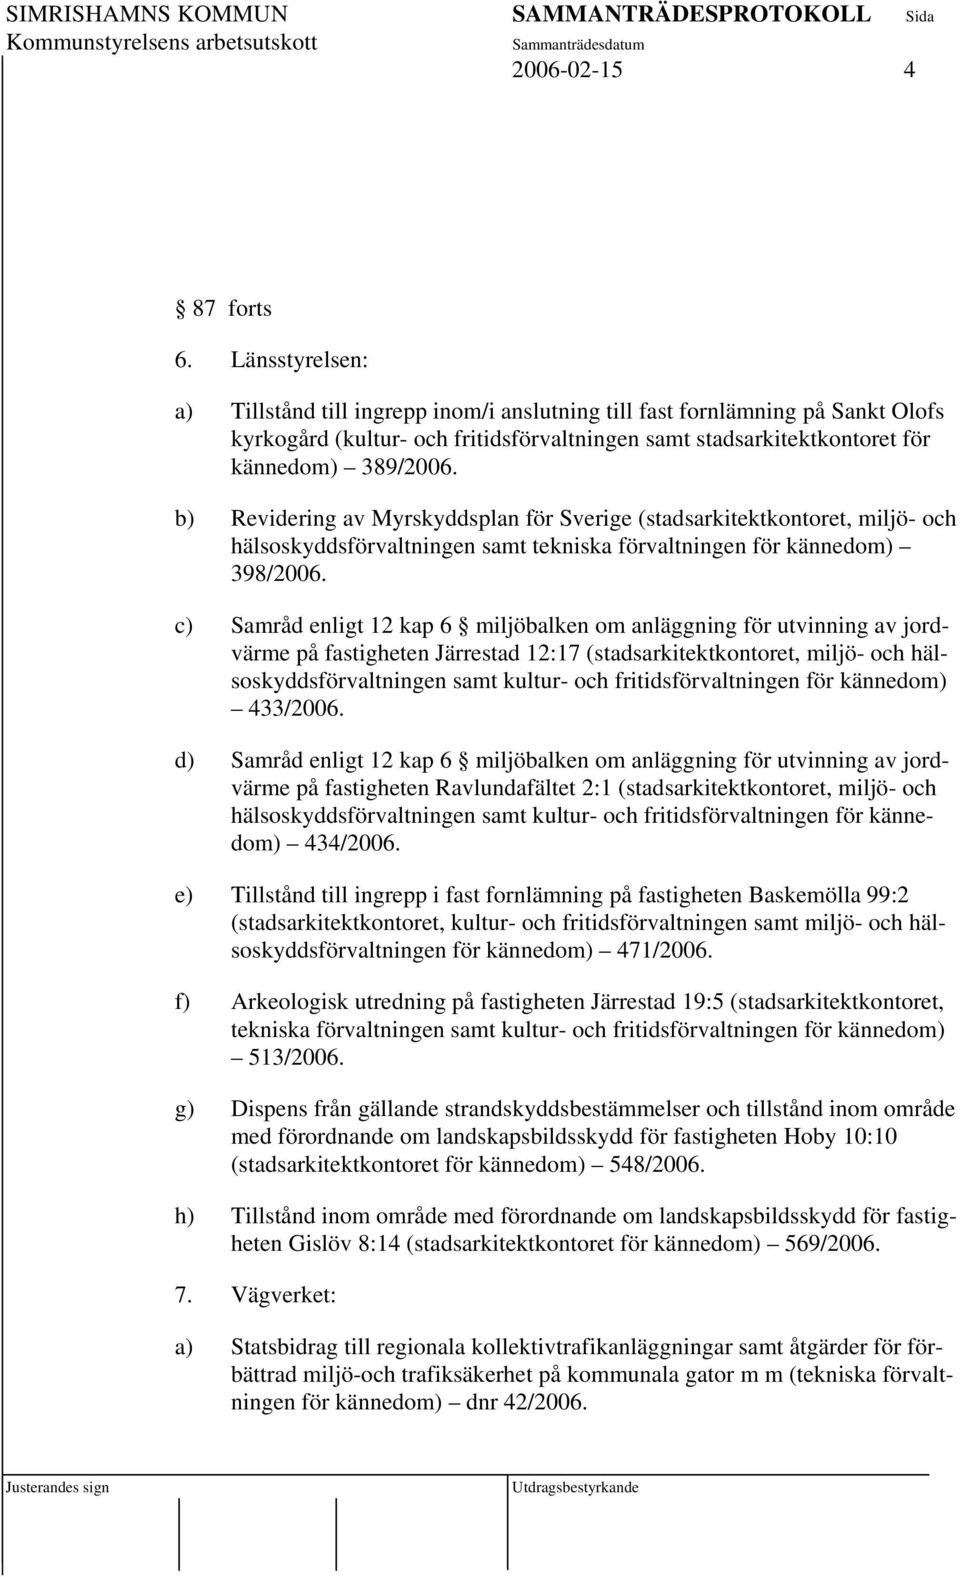 b) Revidering av Myrskyddsplan för Sverige (stadsarkitektkontoret, miljö- och hälsoskyddsförvaltningen samt tekniska förvaltningen för kännedom) 398/2006.